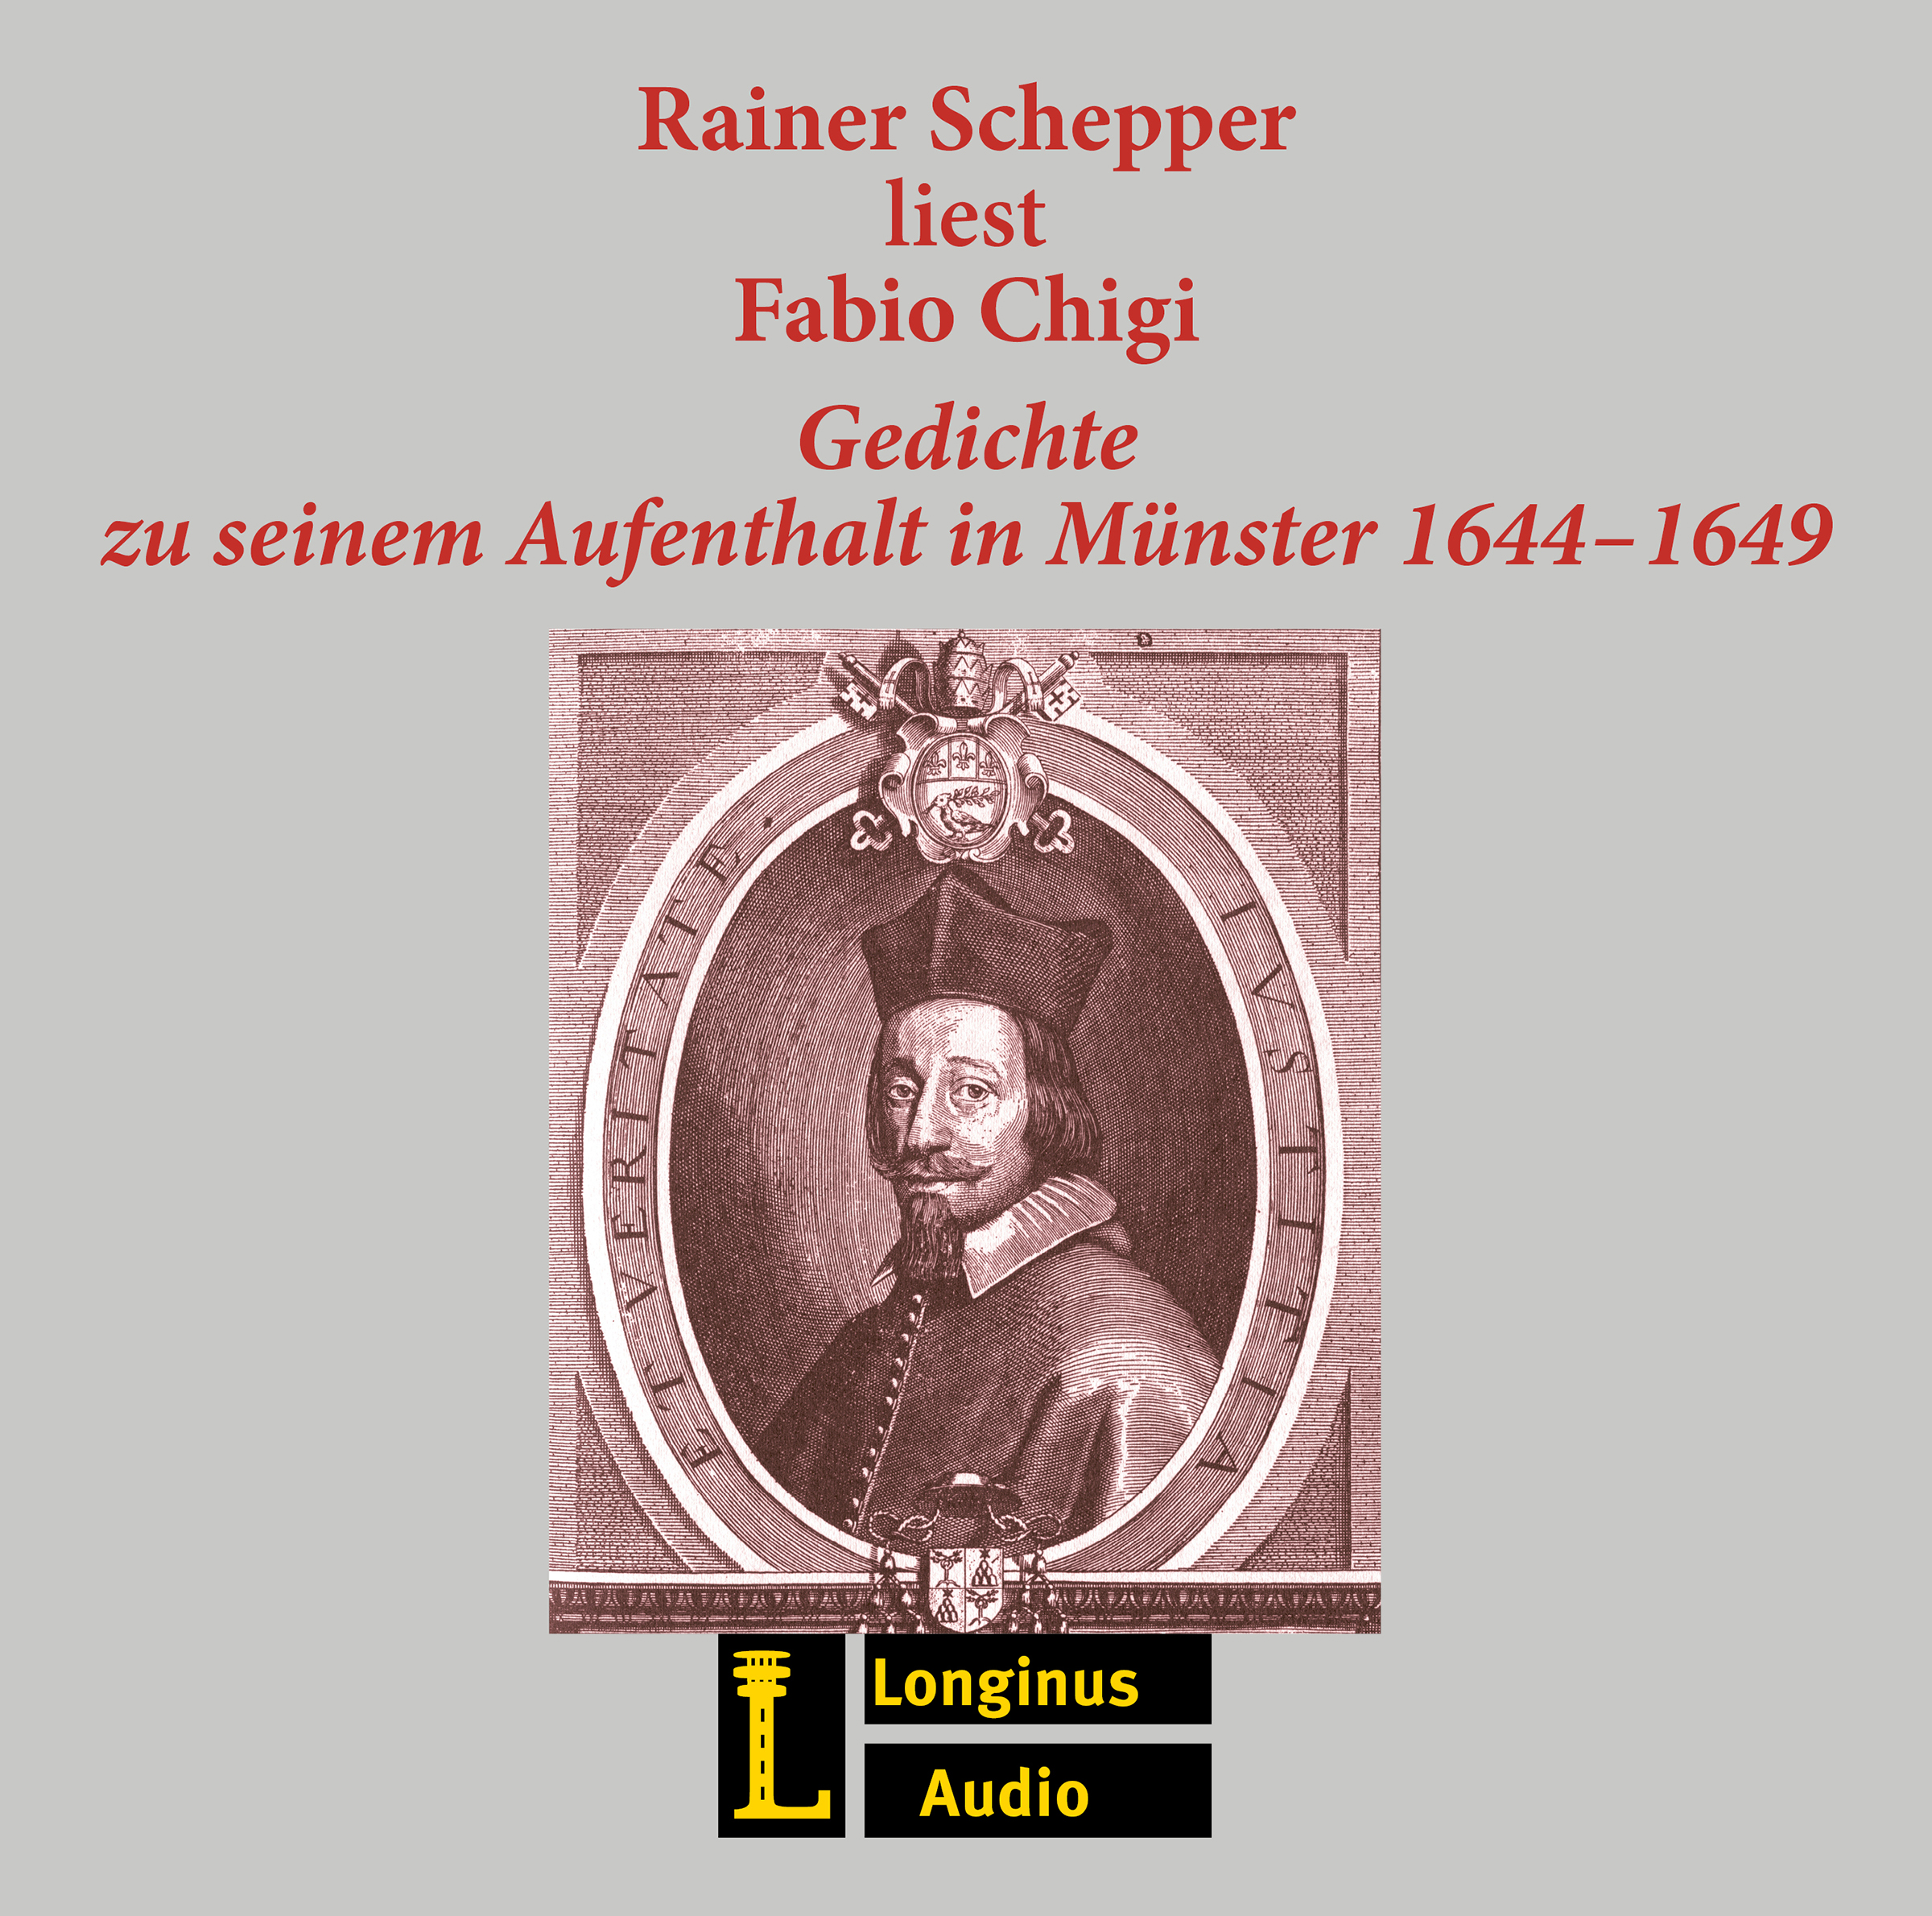 Rainer Schepper liest Fabio Chigi - Gedichte - Hörbuch